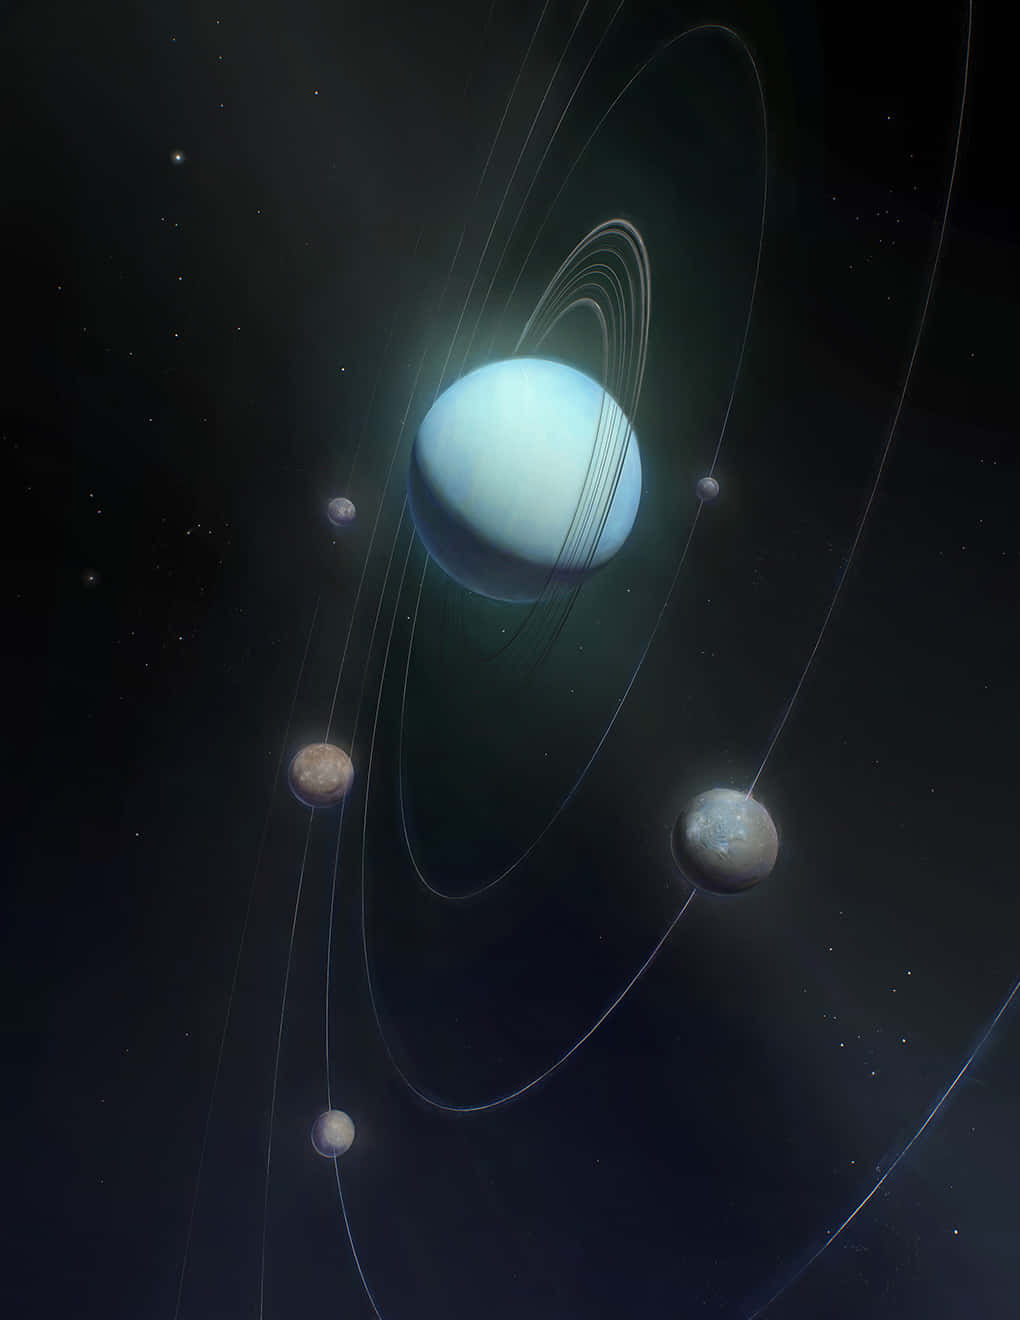 Billedeaf Uranus I Størrelsen 1020 X 1320.